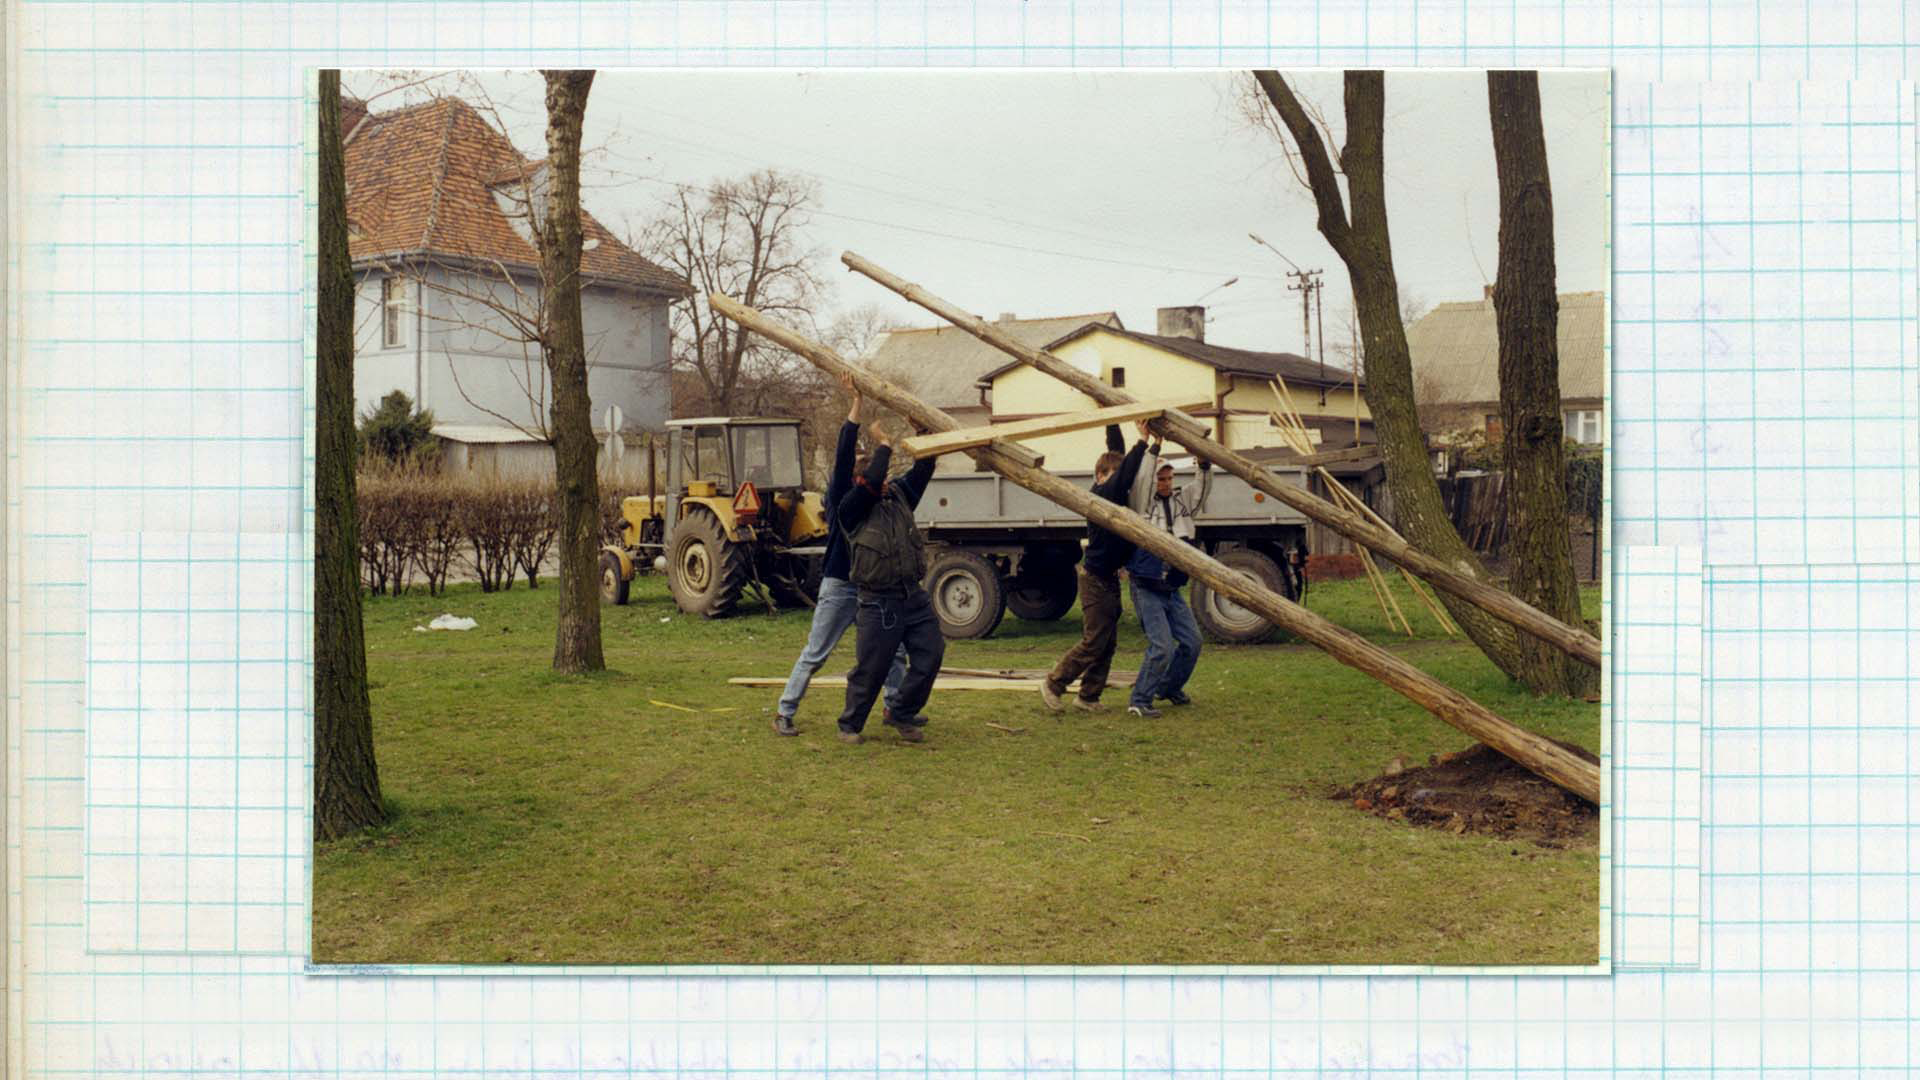 Fotografia w kolorze. Czwórka mężczyzn podczas ustawiania drewnianej konstrukcji, o dużych wymiarach. W tle traktor z przyczepą i budynki mieszkalne.